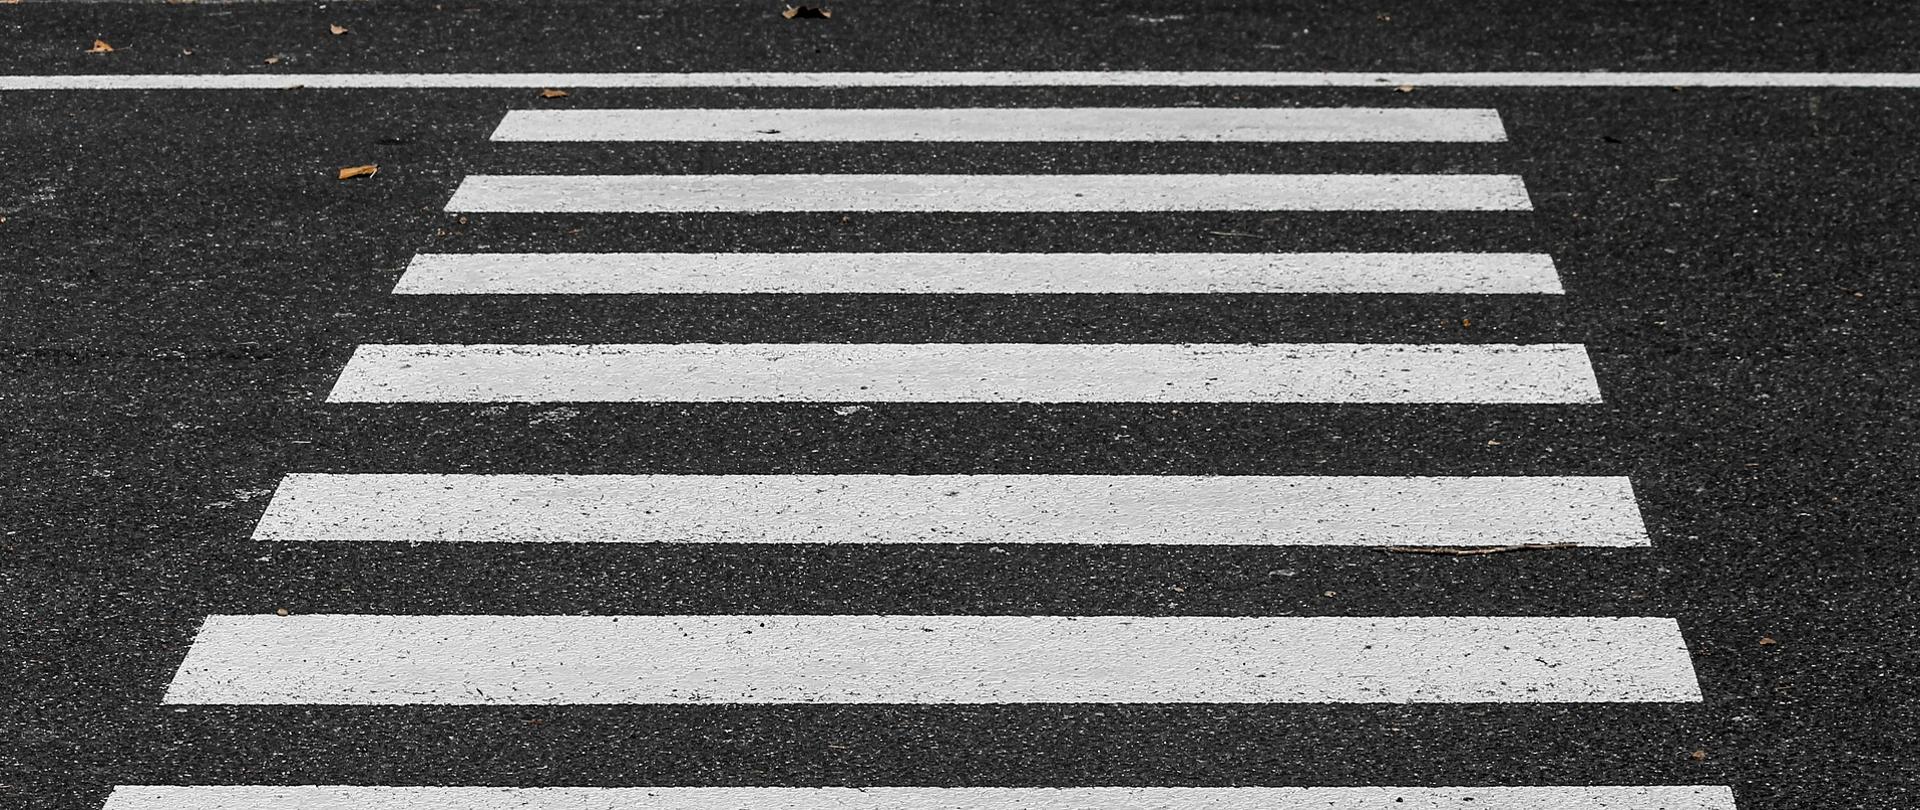 Na zdjęciu fragment asfaltu, na którym narysowane są pasy - zebra, przejście dla pieszych. 